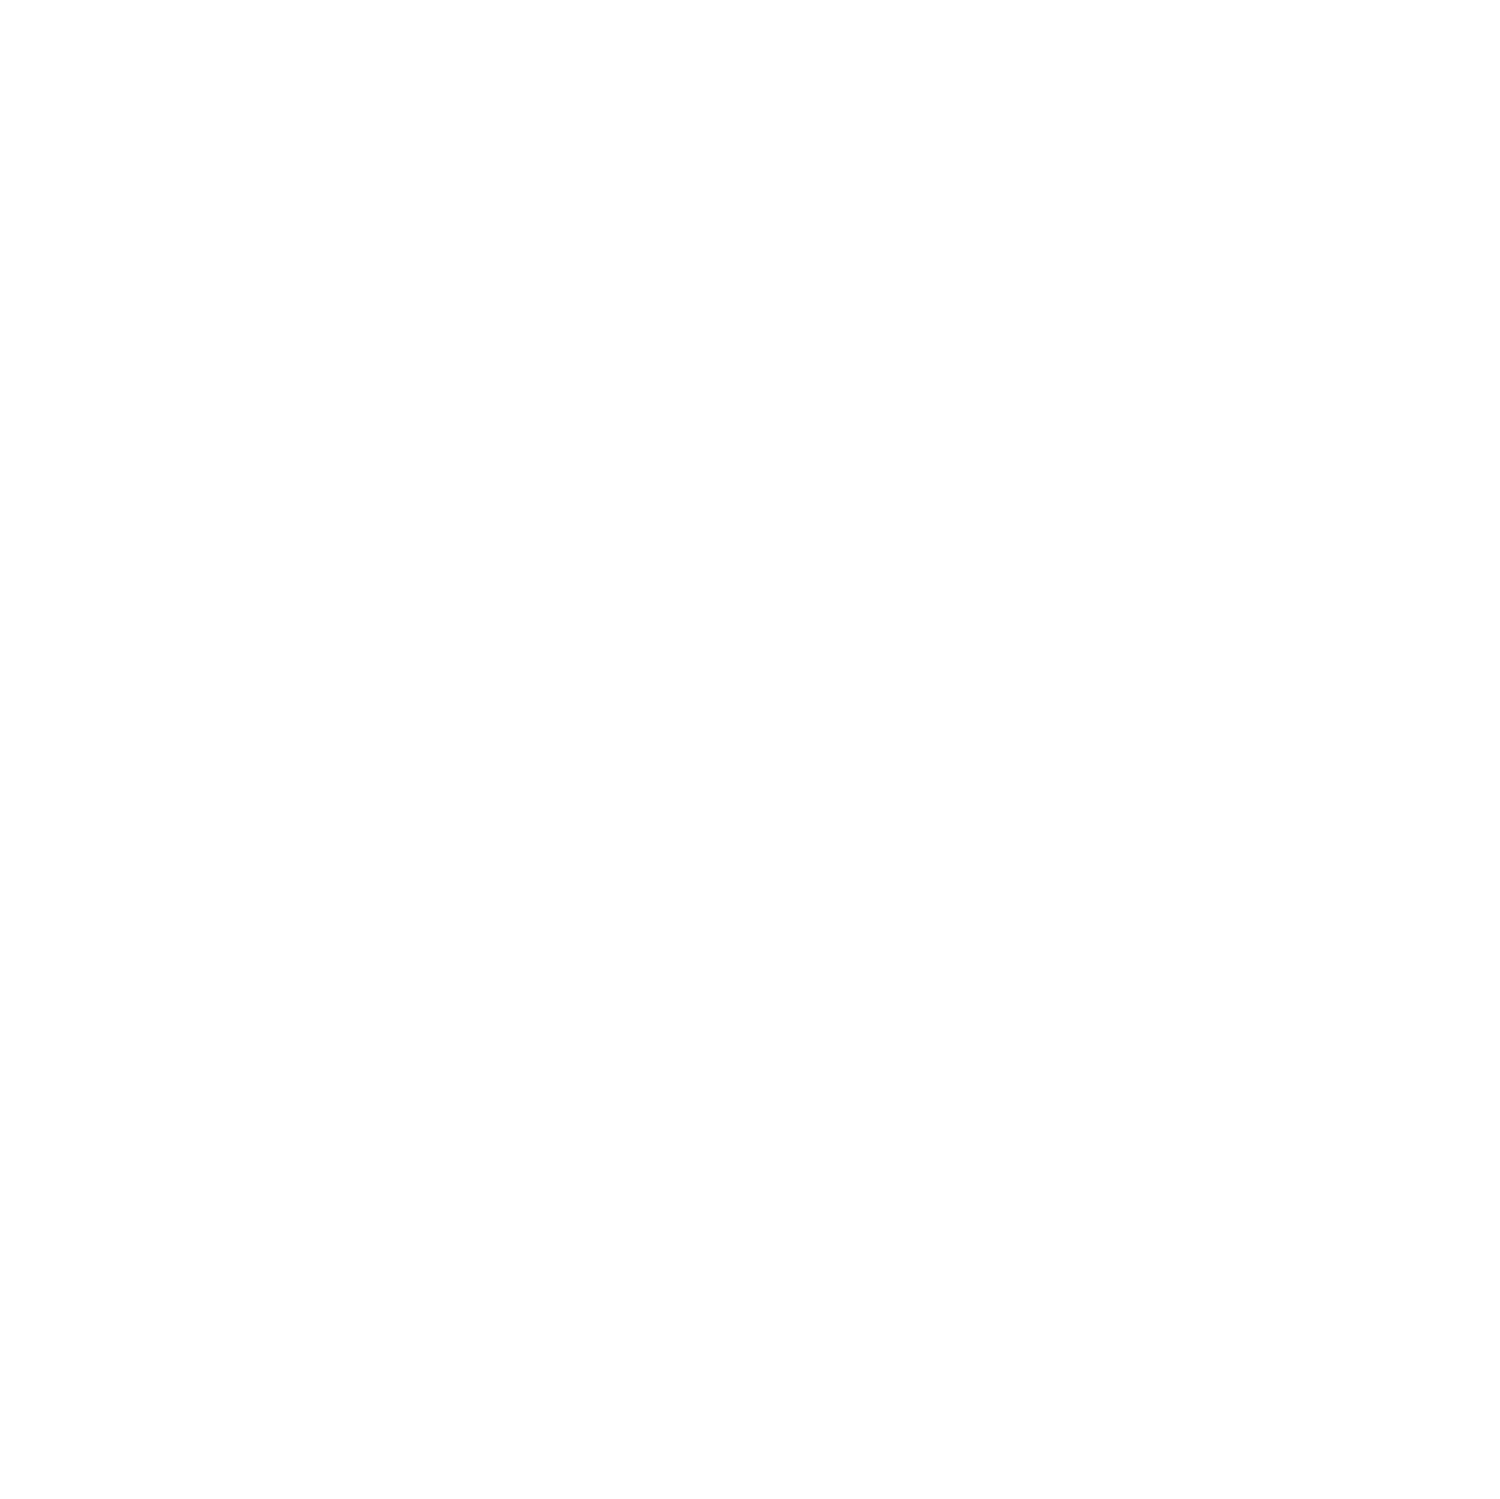 Lemonade Summit